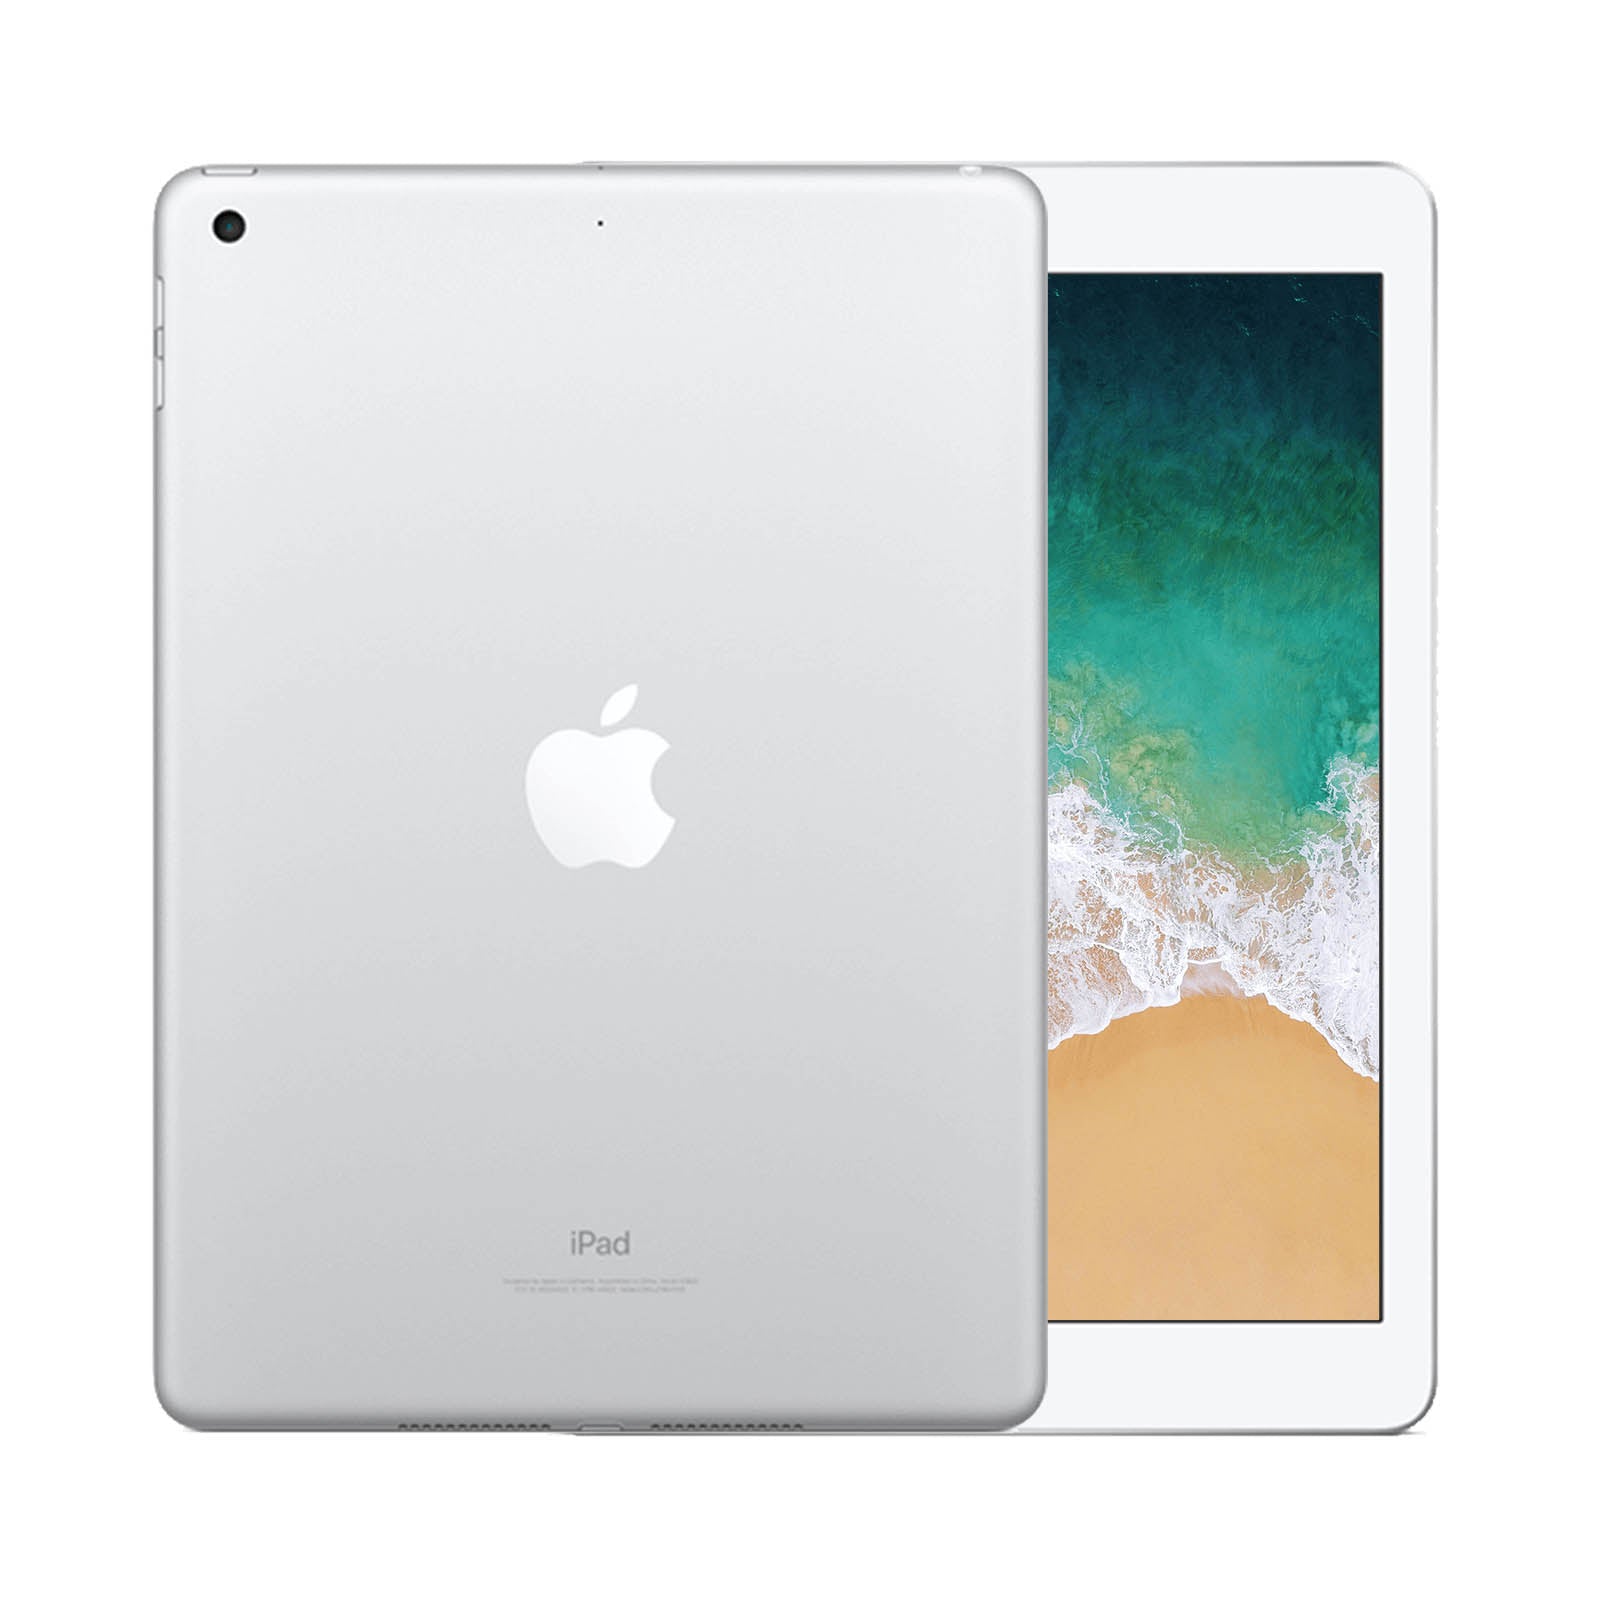 Apple iPad 5 128GB WiFi Silver - Very Good